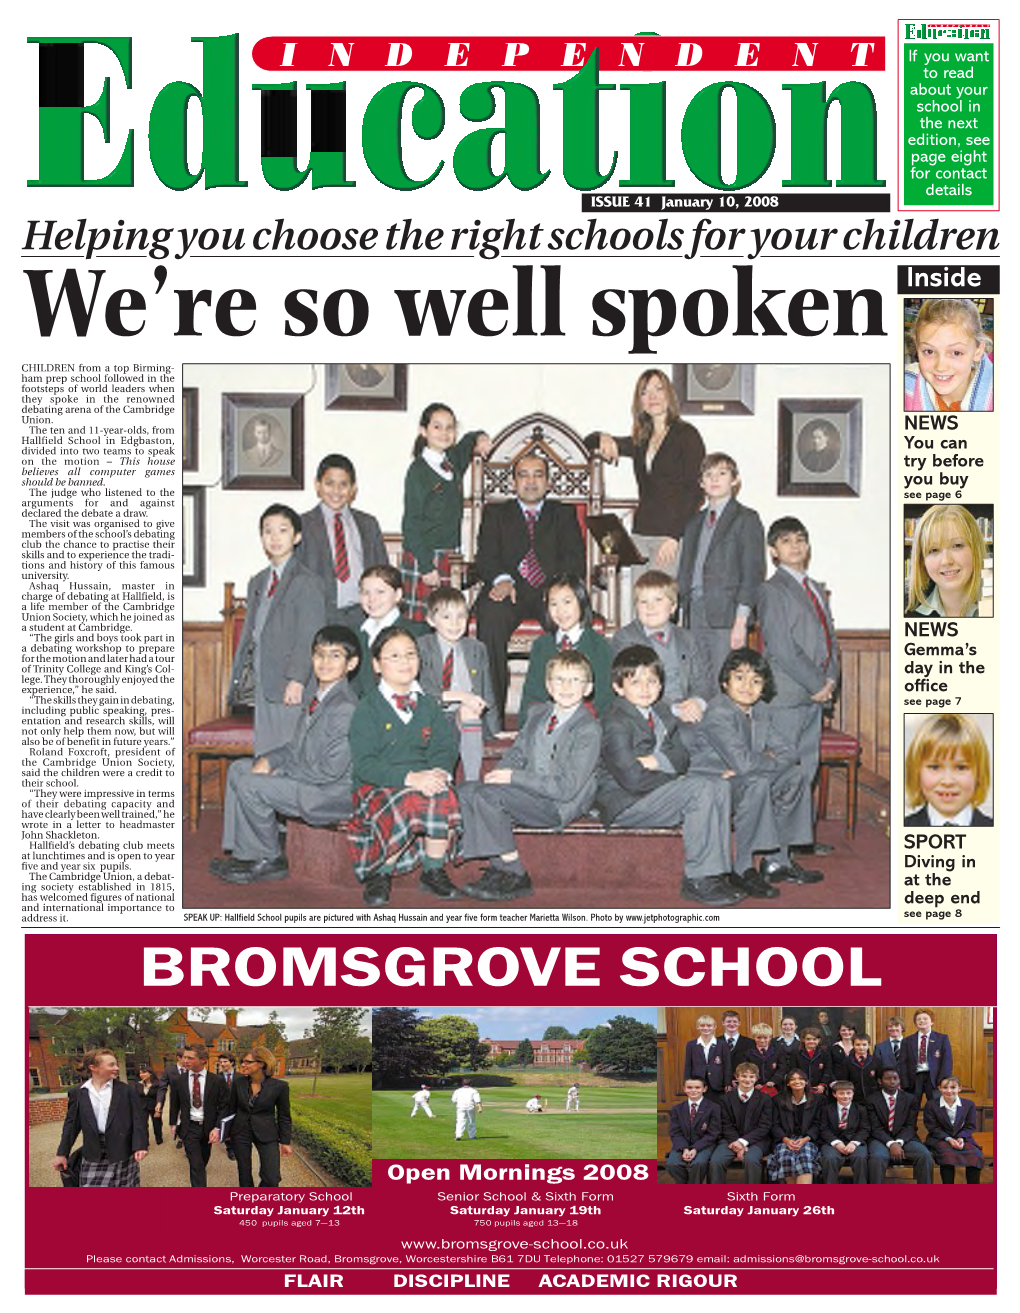 Bromsgrove School